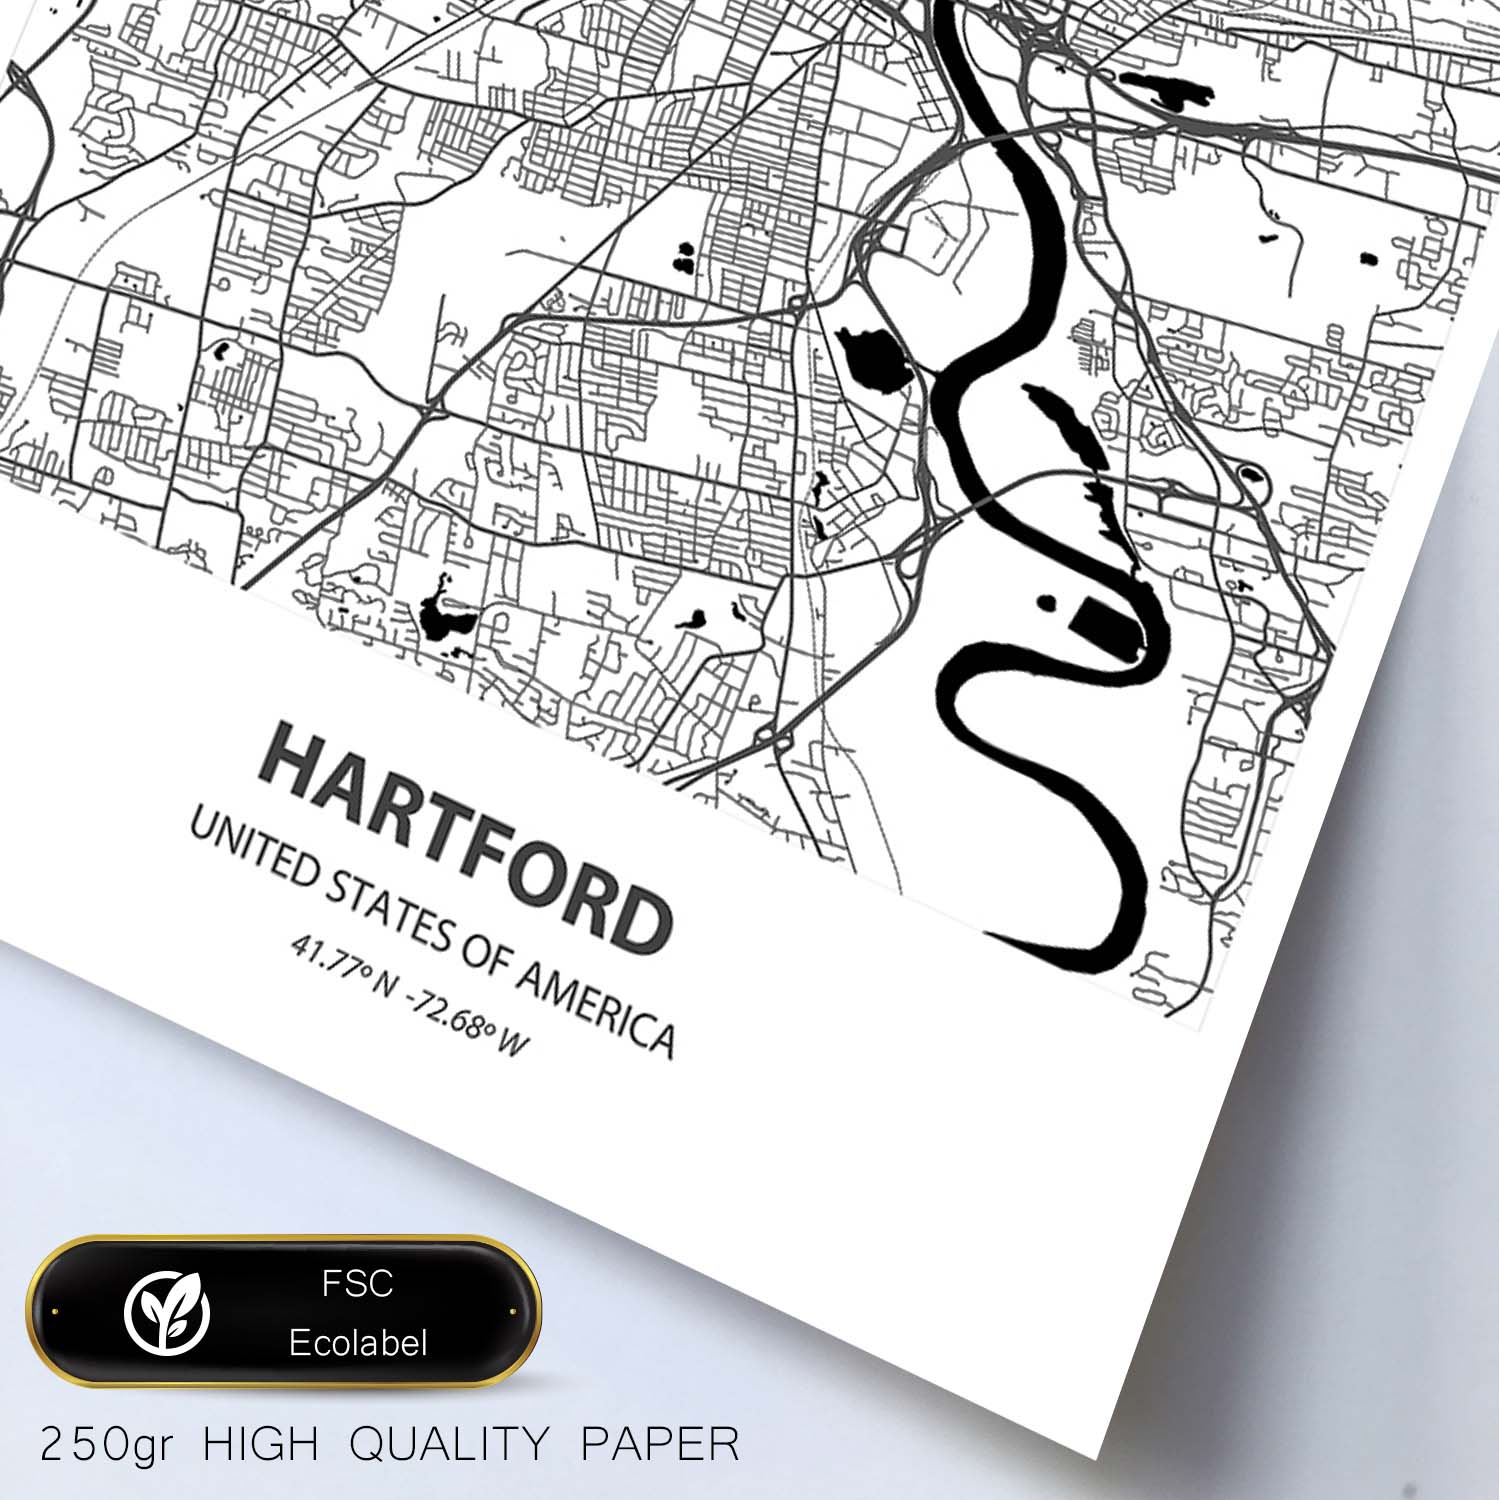 Poster con mapa de artford - USA. Láminas de ciudades de Estados Unidos con mares y ríos en color negro.-Artwork-Nacnic-Nacnic Estudio SL